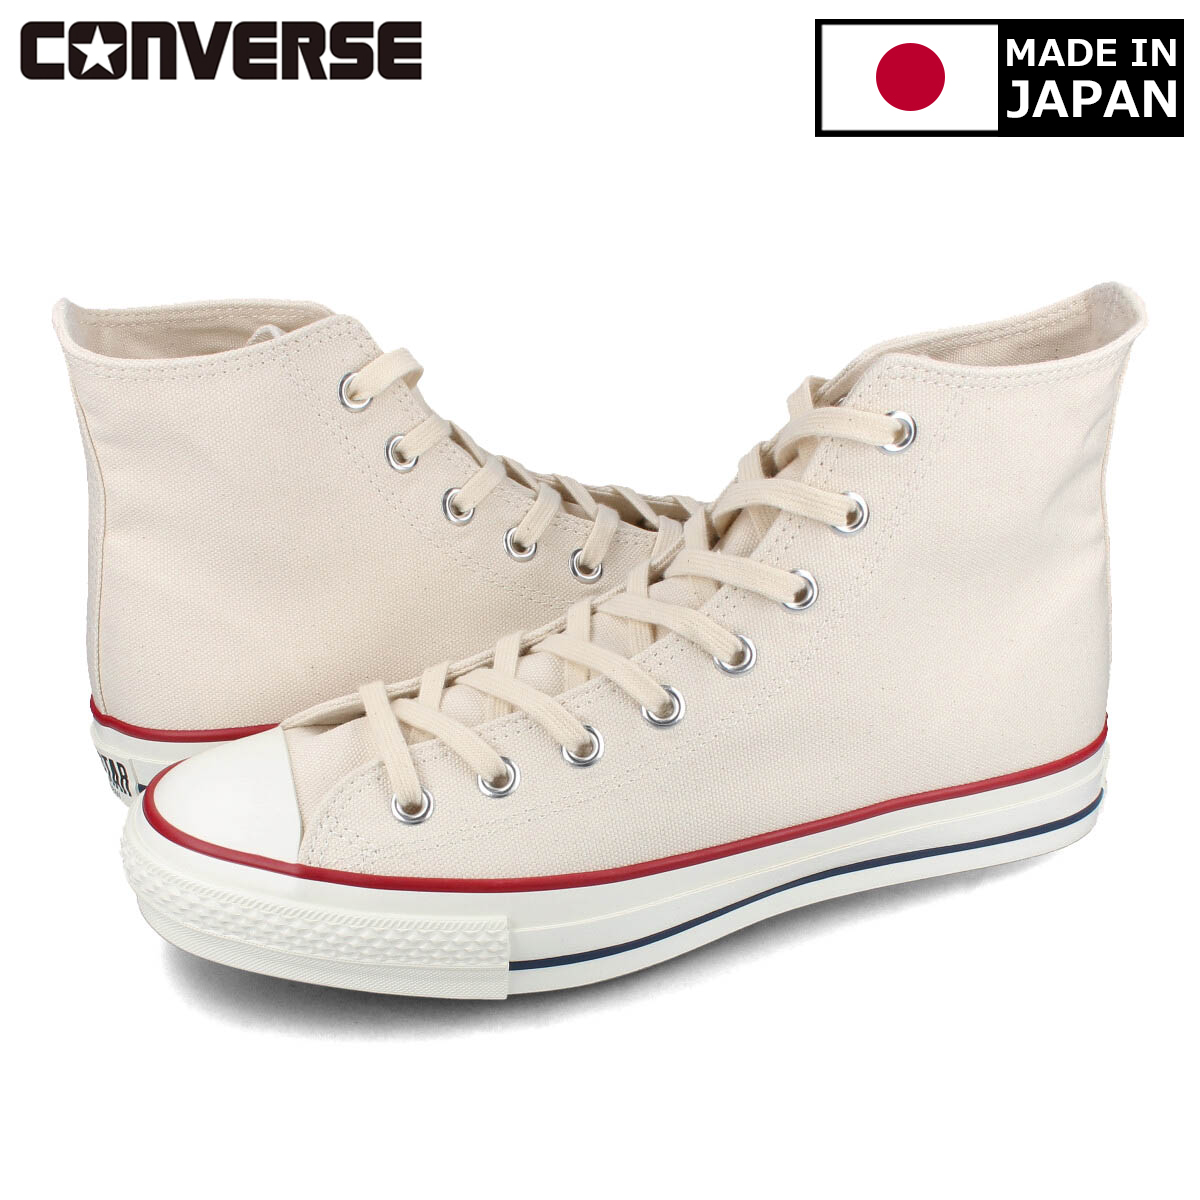 送料無料 CONVERSE コンバース メンズ 靴 スニーカー MADE IN JAPAN メイド イン 32068430 ジャパン 日本製 オールスター 早割クーポン 全商品オープニング価格 CANVAS STAR HI ALL J WHITE NATURAL